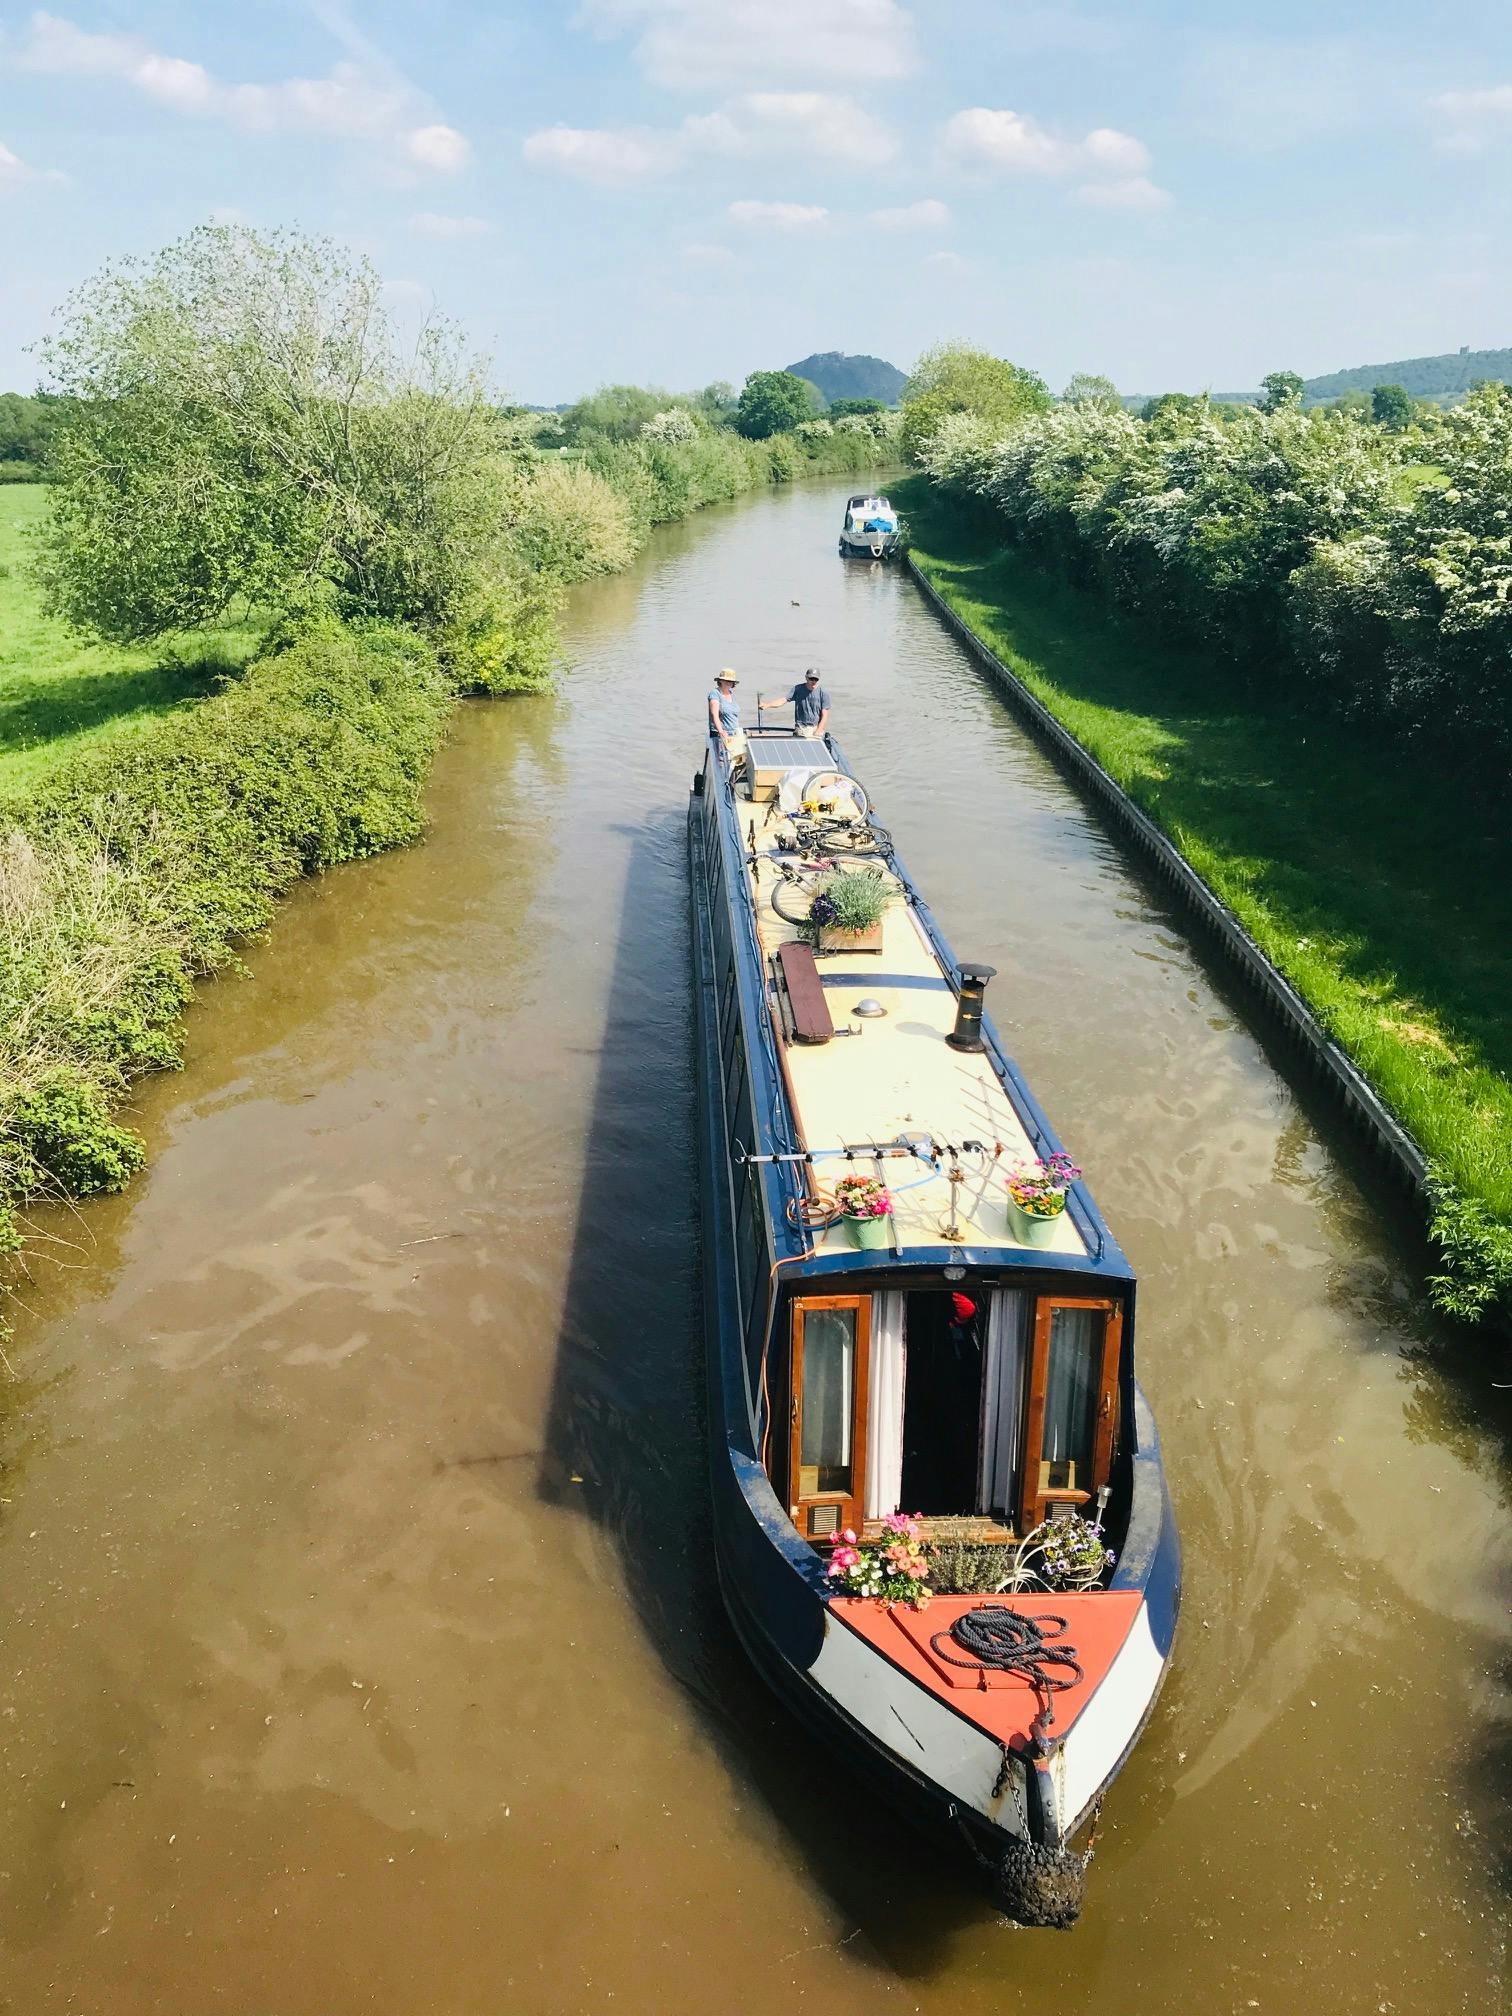 Image - Shropshire Union Canal